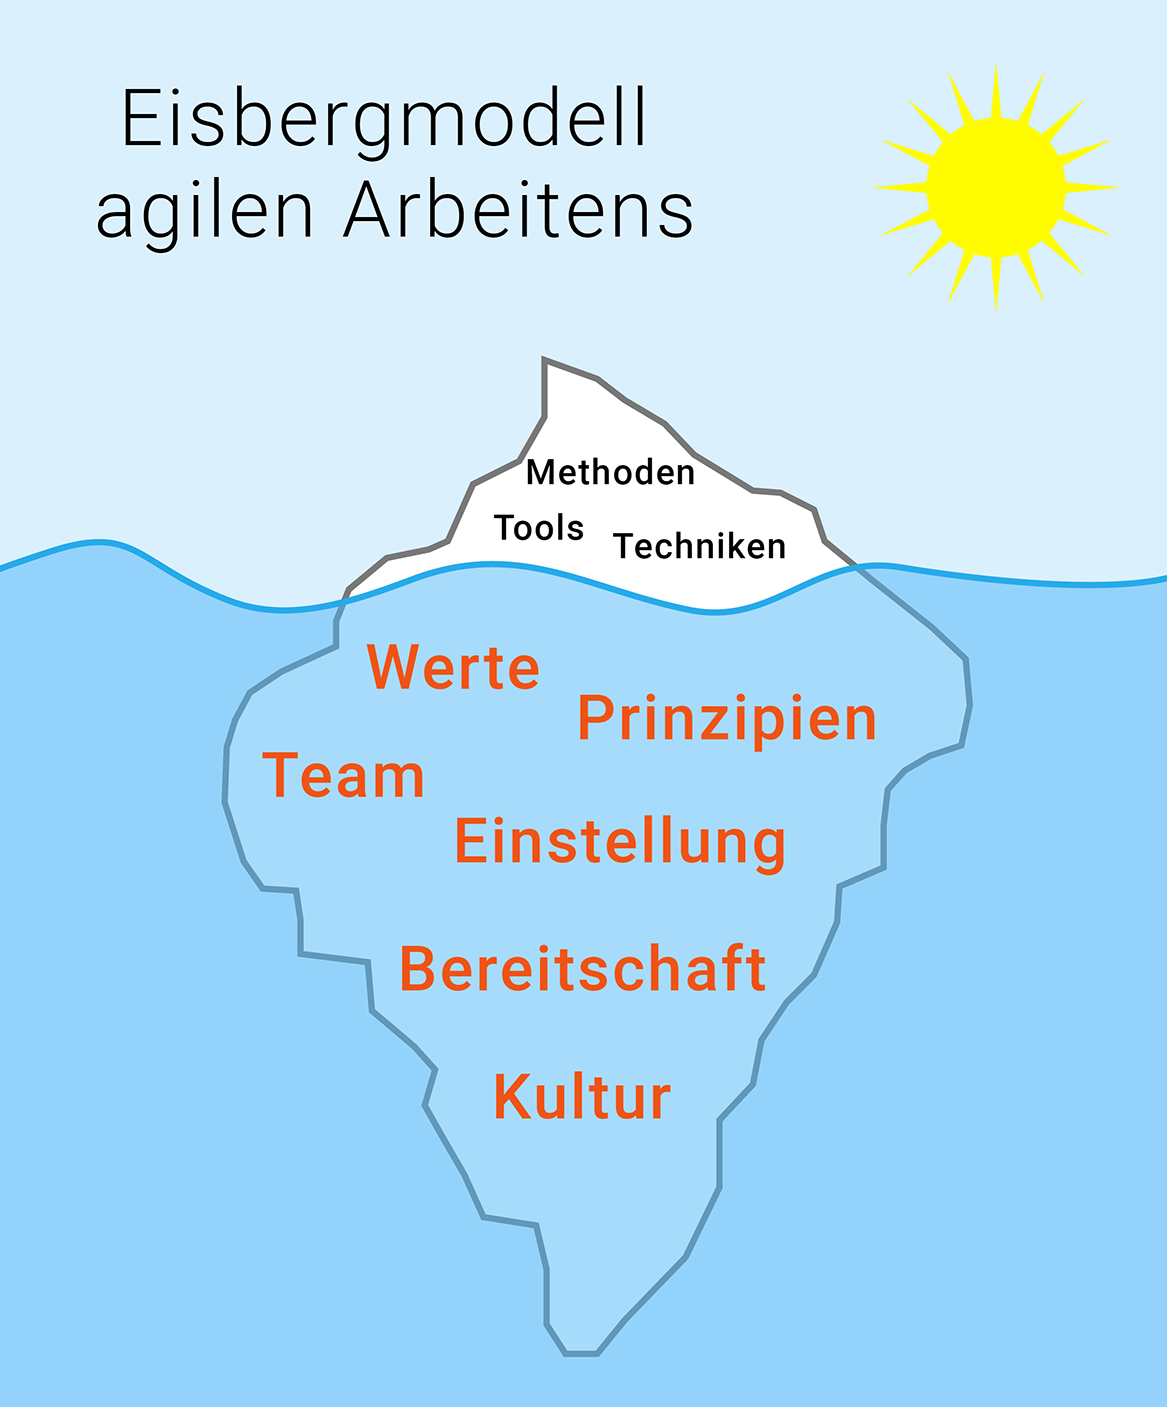 Eisbergmodell agilen Arbeitens